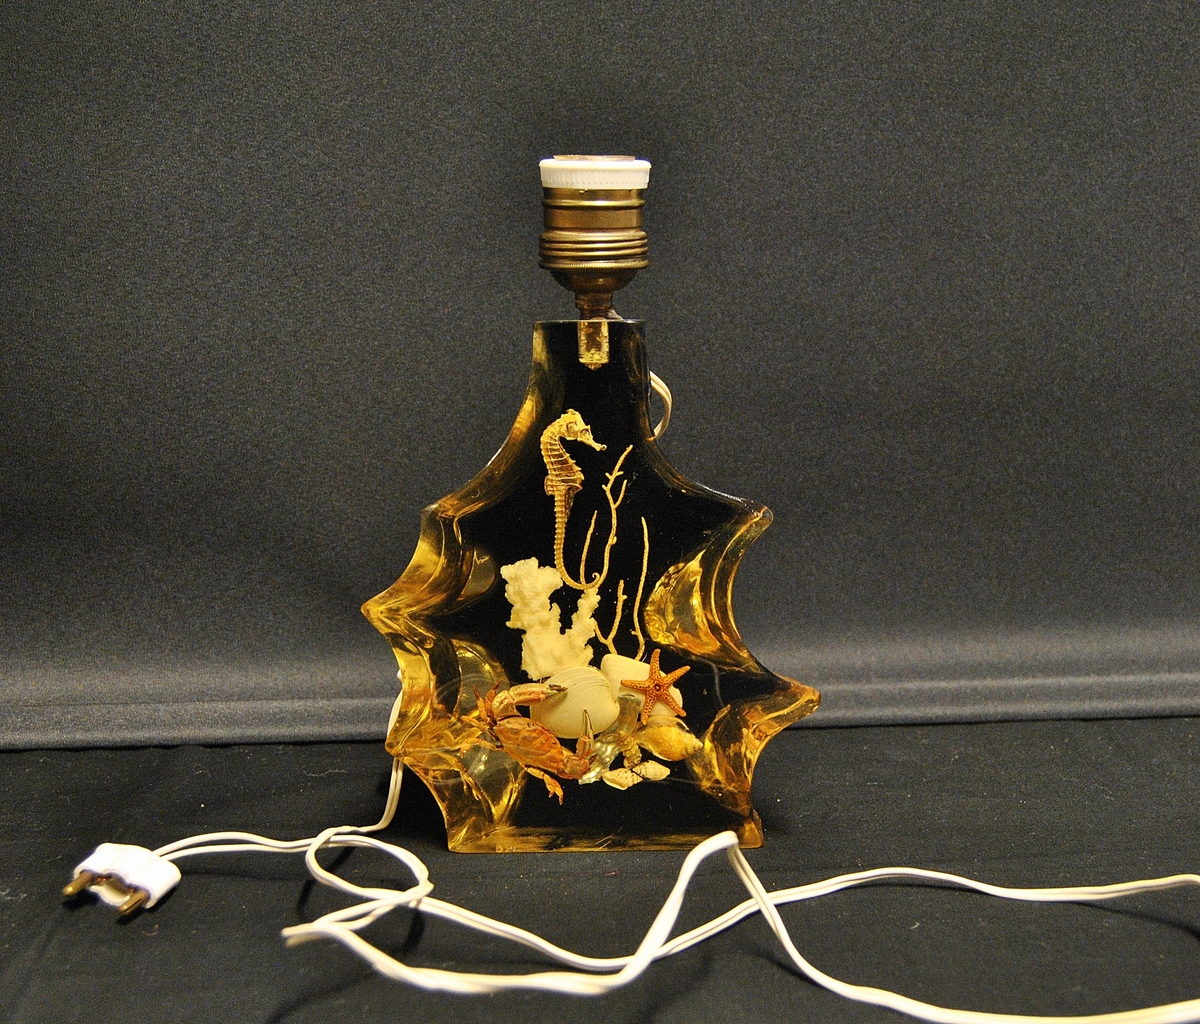 Lampe med uregulær form. Støpt i lucite recin akryl. Støpt i plasen er korall, sjøhest, krabbe og skjell. Er mest sannsynlig fra 1960-1980- årene. Mulig souvenir fra Spania.